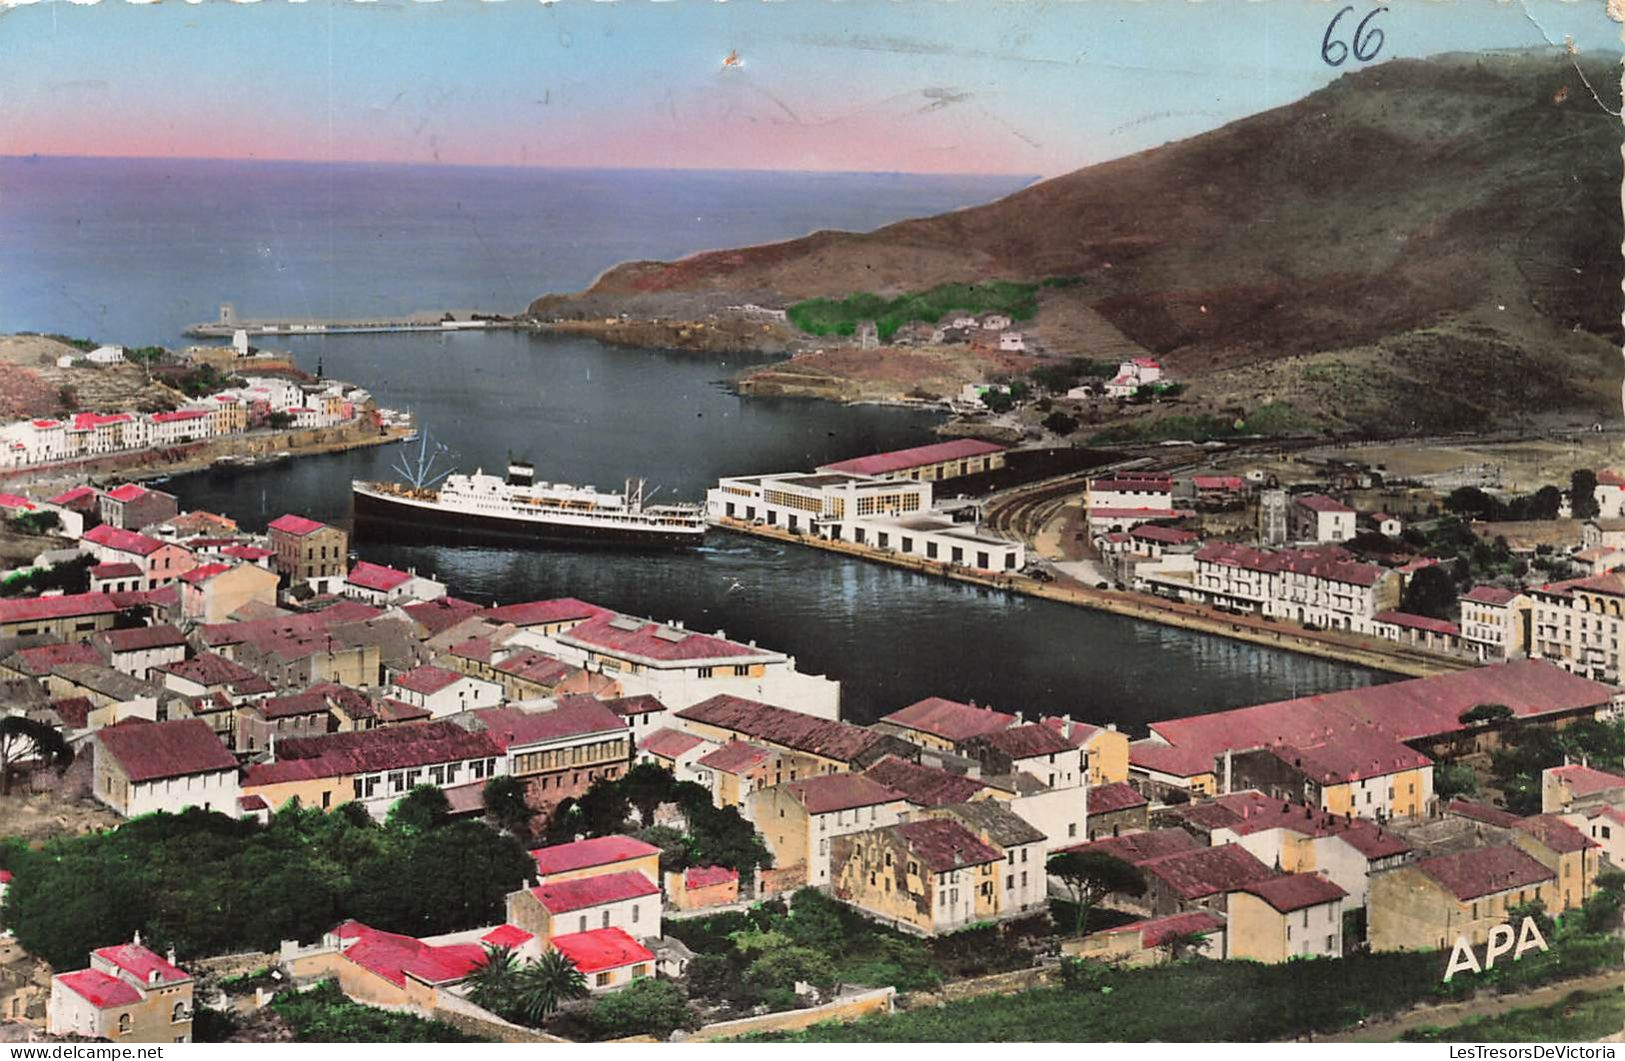 FRANCE - Port Vendres - Vue Générale Du Port Et Nouvelle Compagnie - Carte Postale Ancienne - Port Vendres